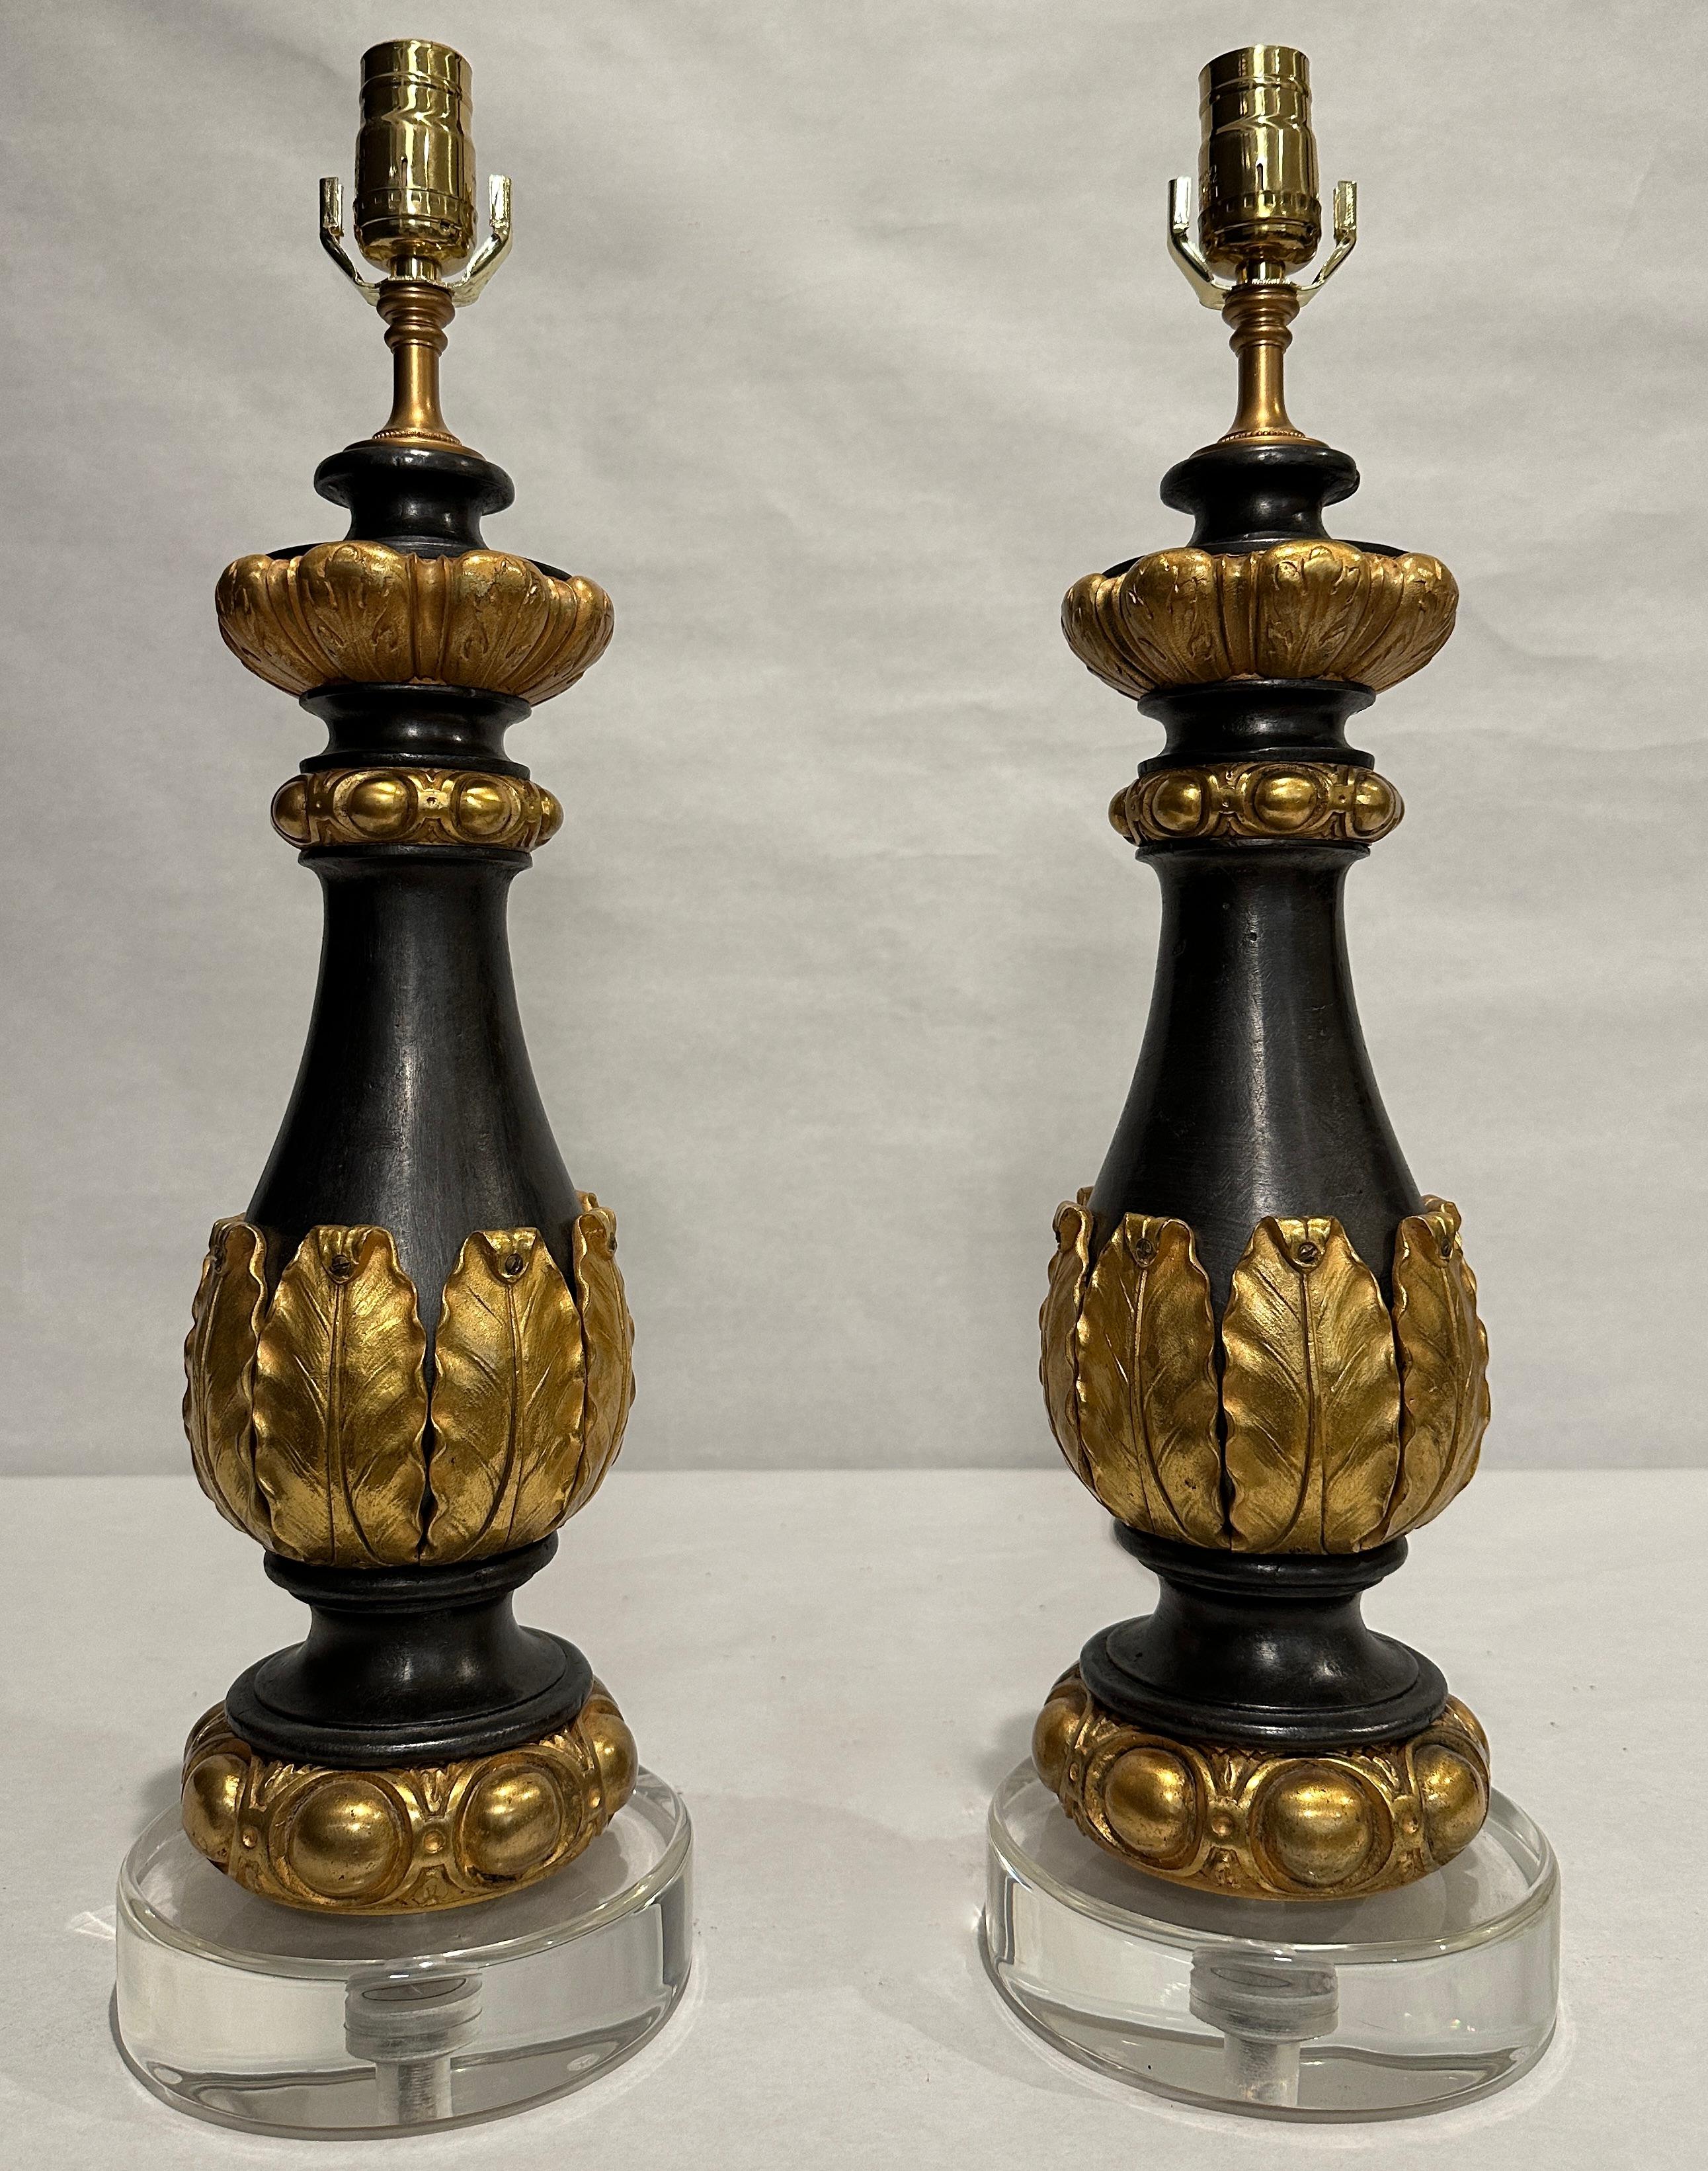 Paire de garnitures en fer patiné et bronze doré du XIXe siècle servant de lampes sur des bases rondes en lucite. Vase du corps entouré de feuilles en bronze doré. Colliers en forme d'œuf et de fléchette en haut et en bas.